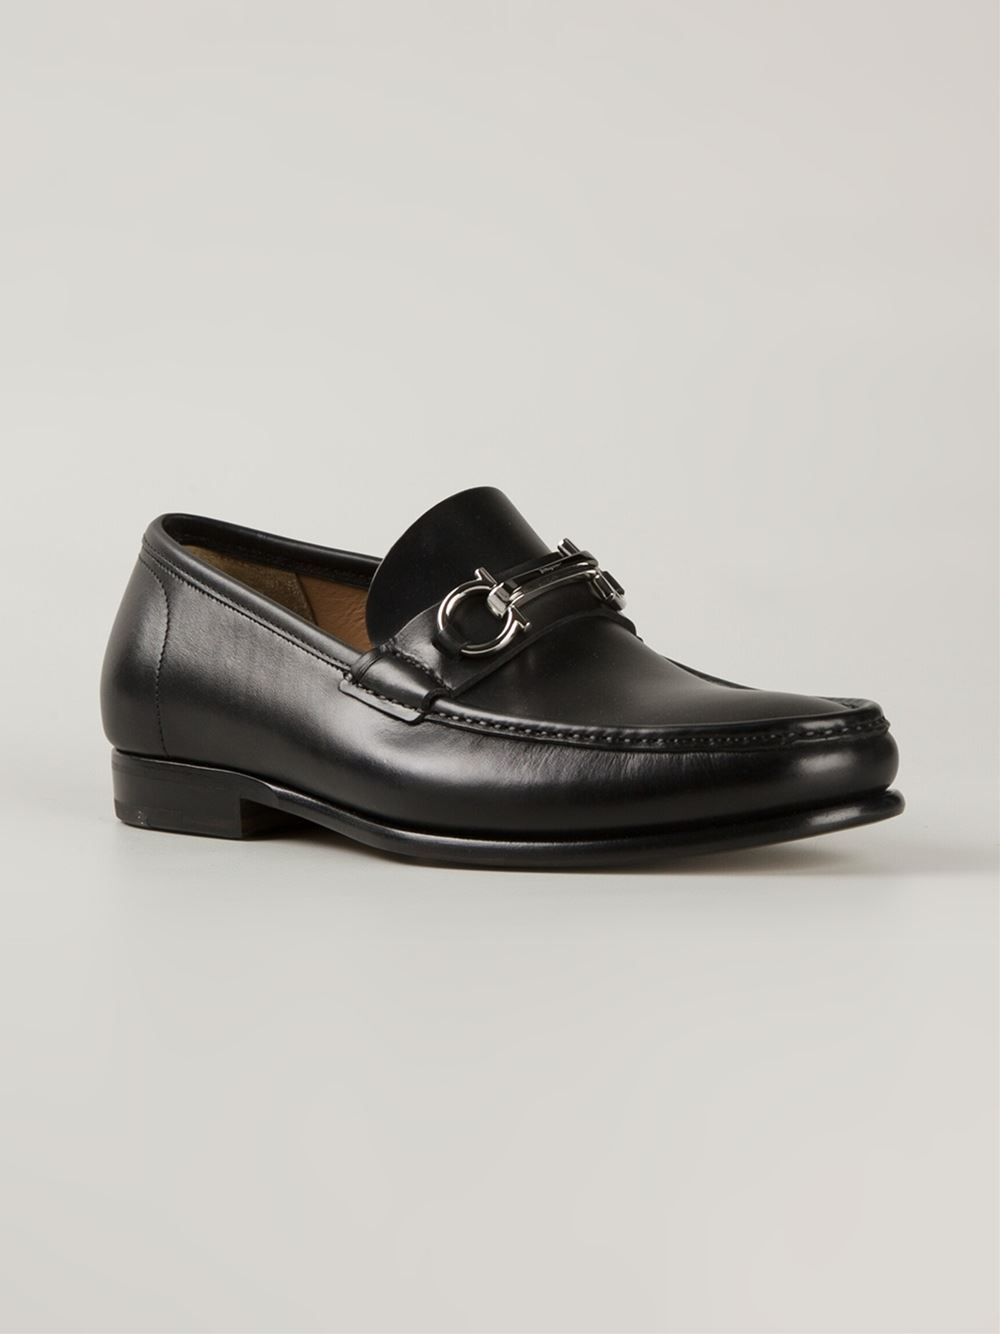 Lyst - Ferragamo 'Raffaele' Loafers in Black for Men